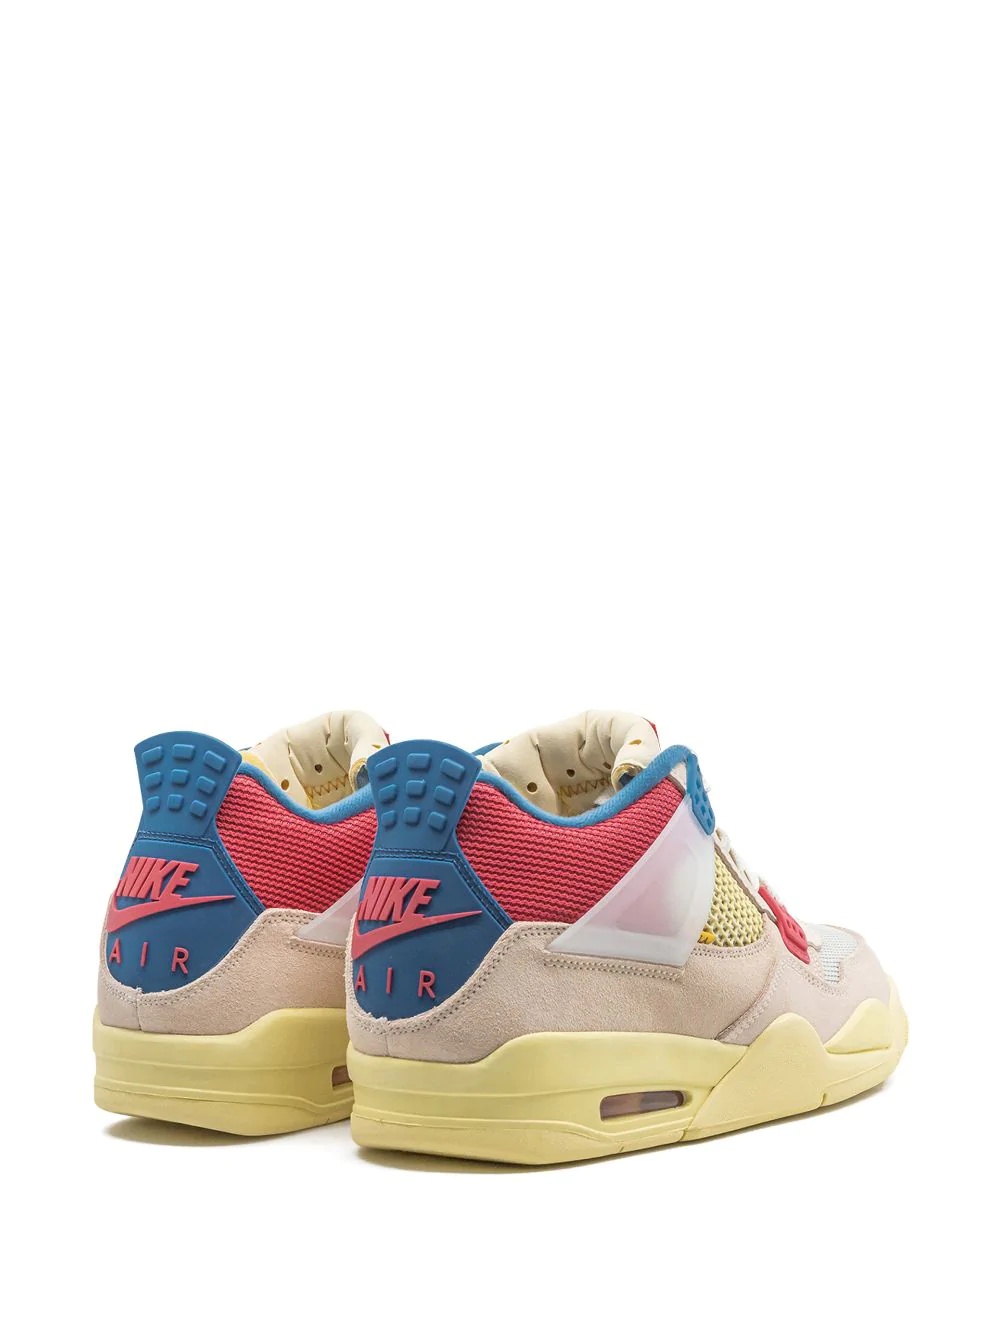 x Union Air Jordan 4 Retro SP "Guava Ice" sneakers - 3